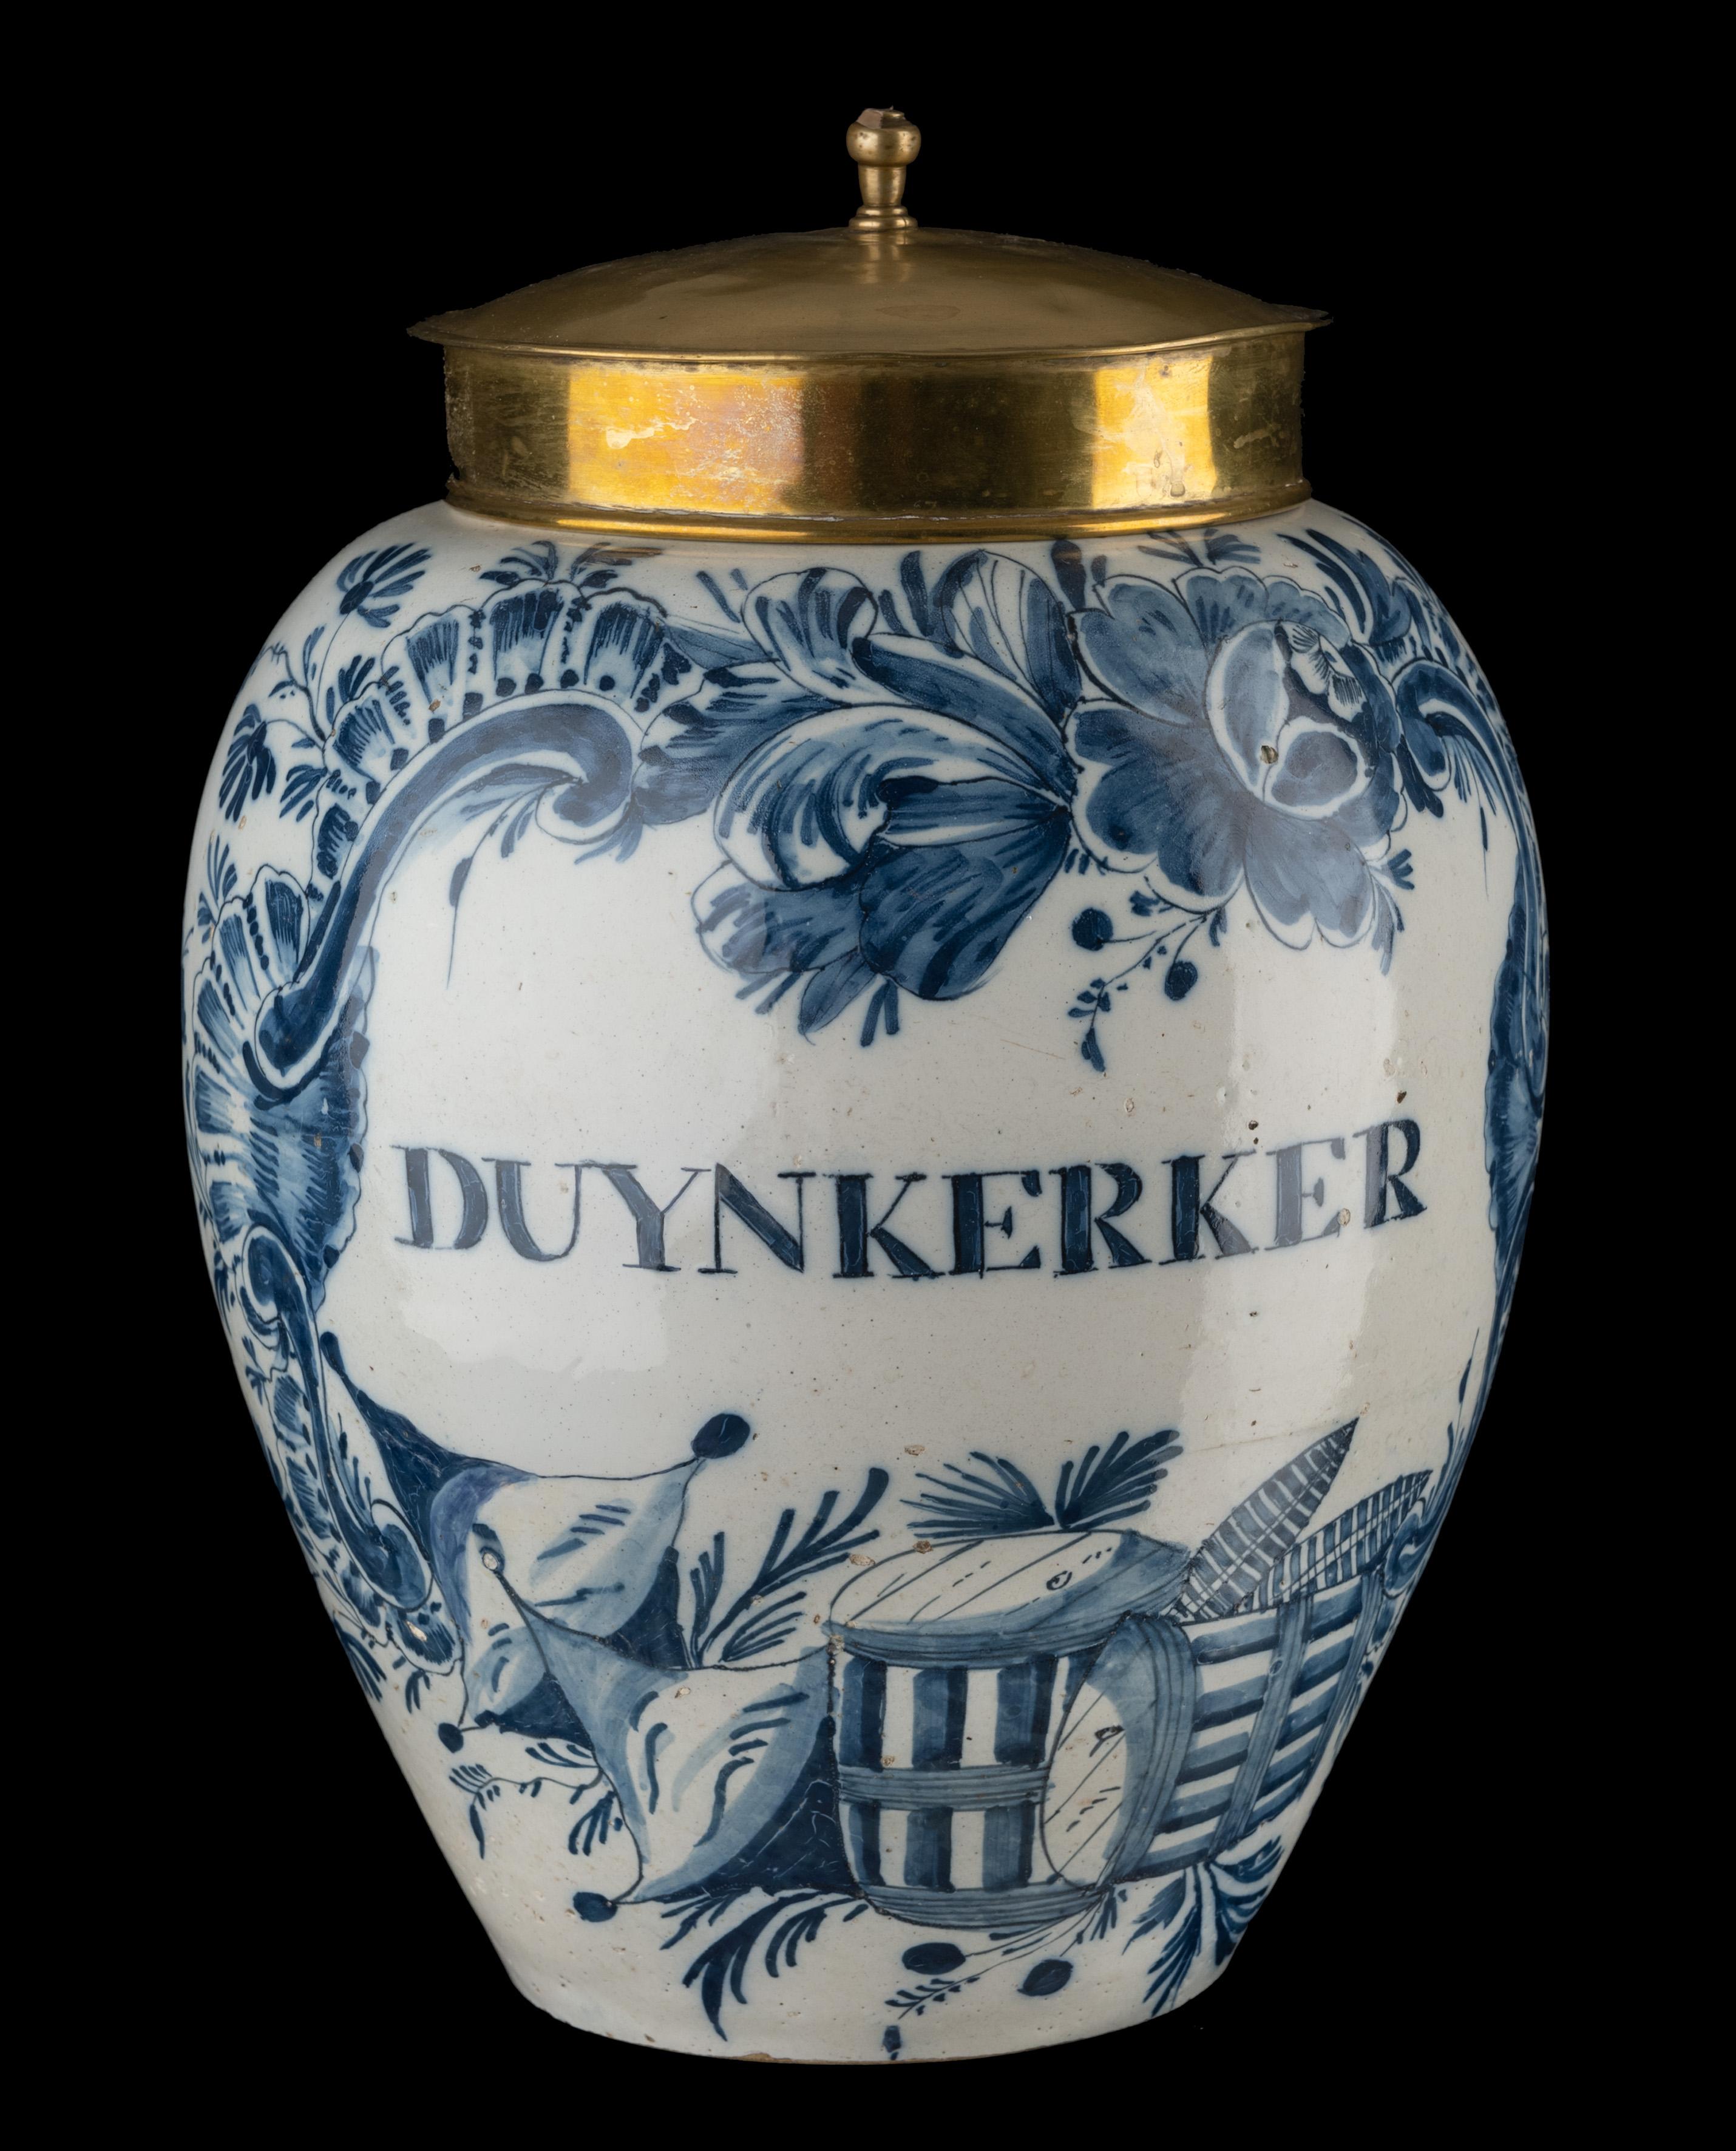 Blau-weiße DUYNKERKER-Tabakdose
Delft, 1760-1780

Die eiförmige Tabakdose mit Kupferdeckel hat oben auf der Schulter eine Rille und einen vorspringenden Rand. Das Gefäß ist blau bemalt und trägt eine Kartusche mit der Aufschrift DUYNKERKER. Die